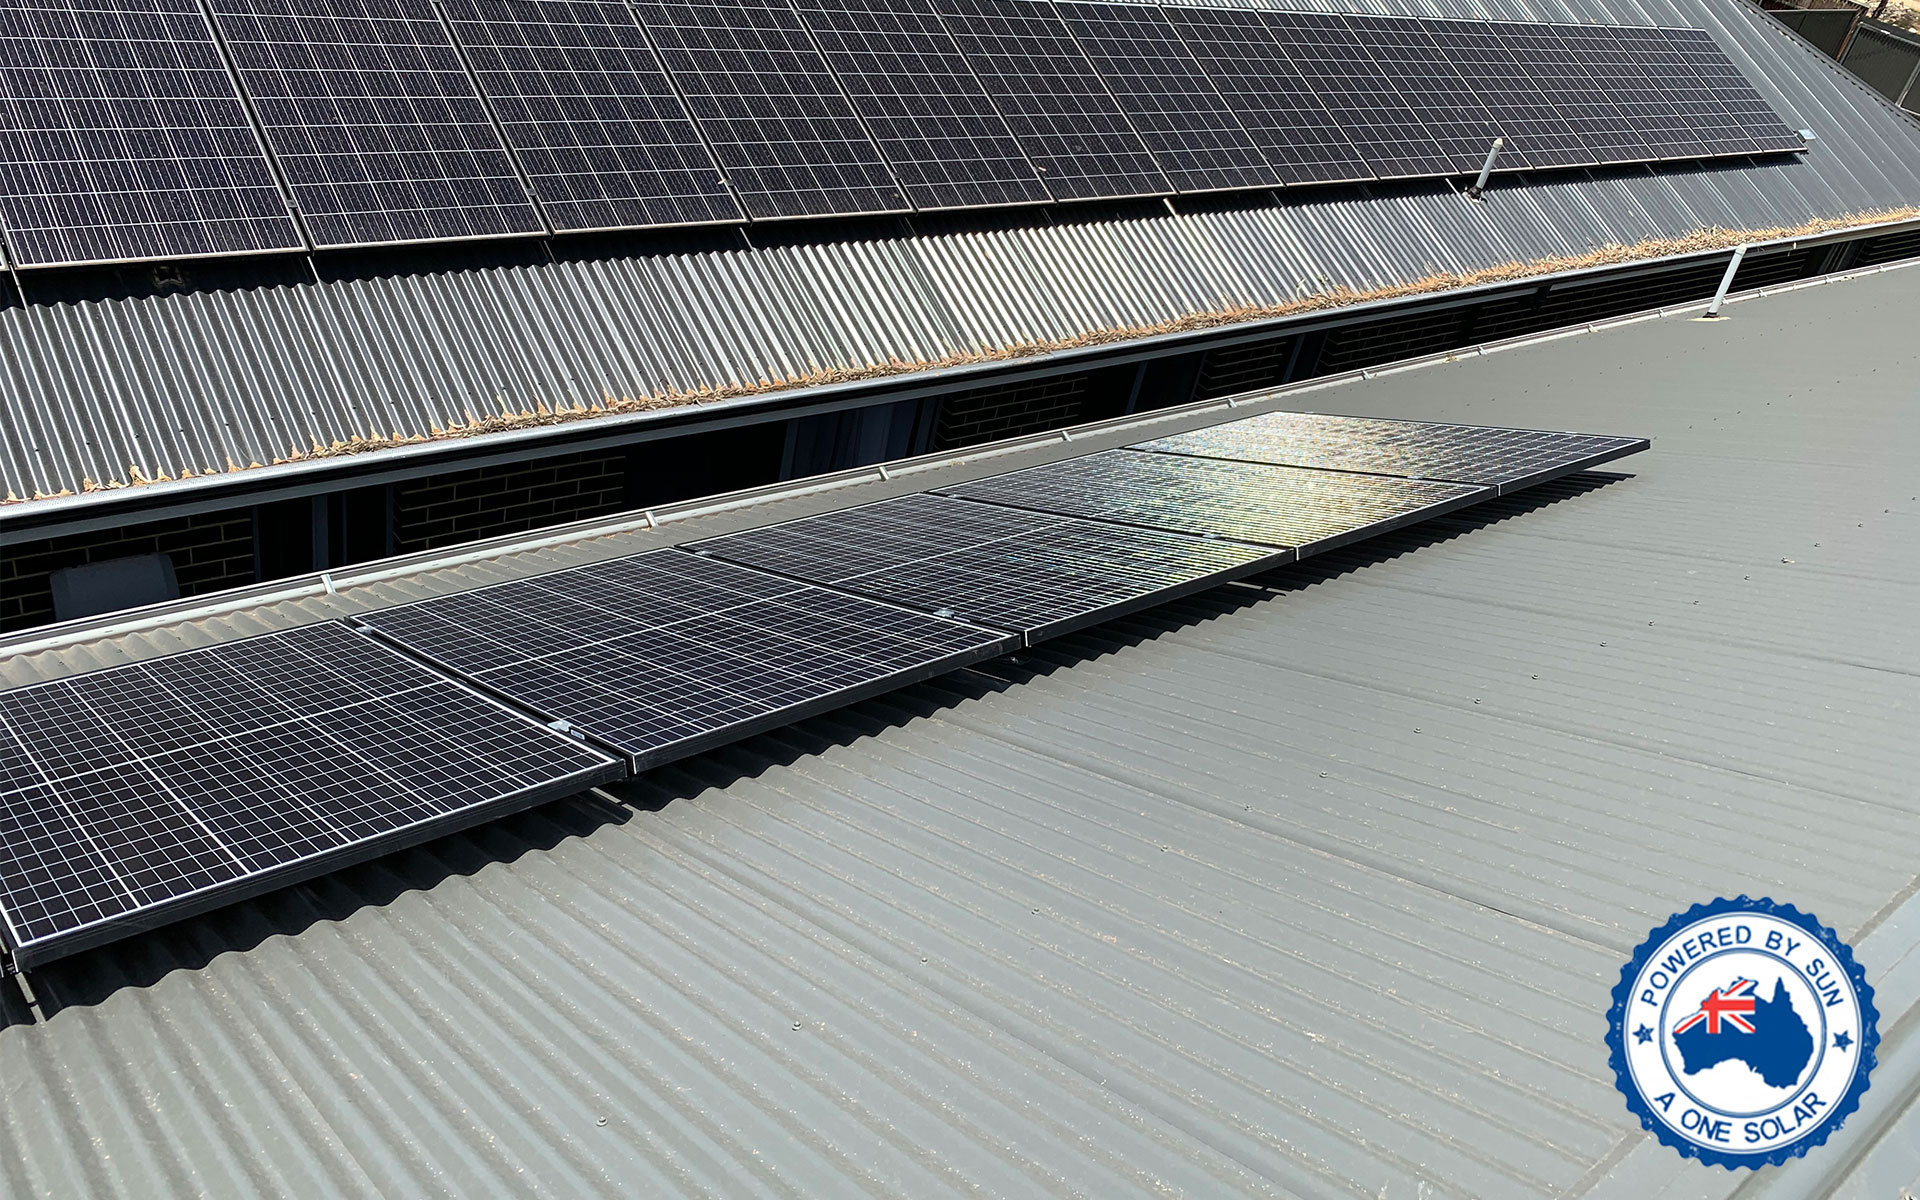 Aone Solar Gallery – A One Solar